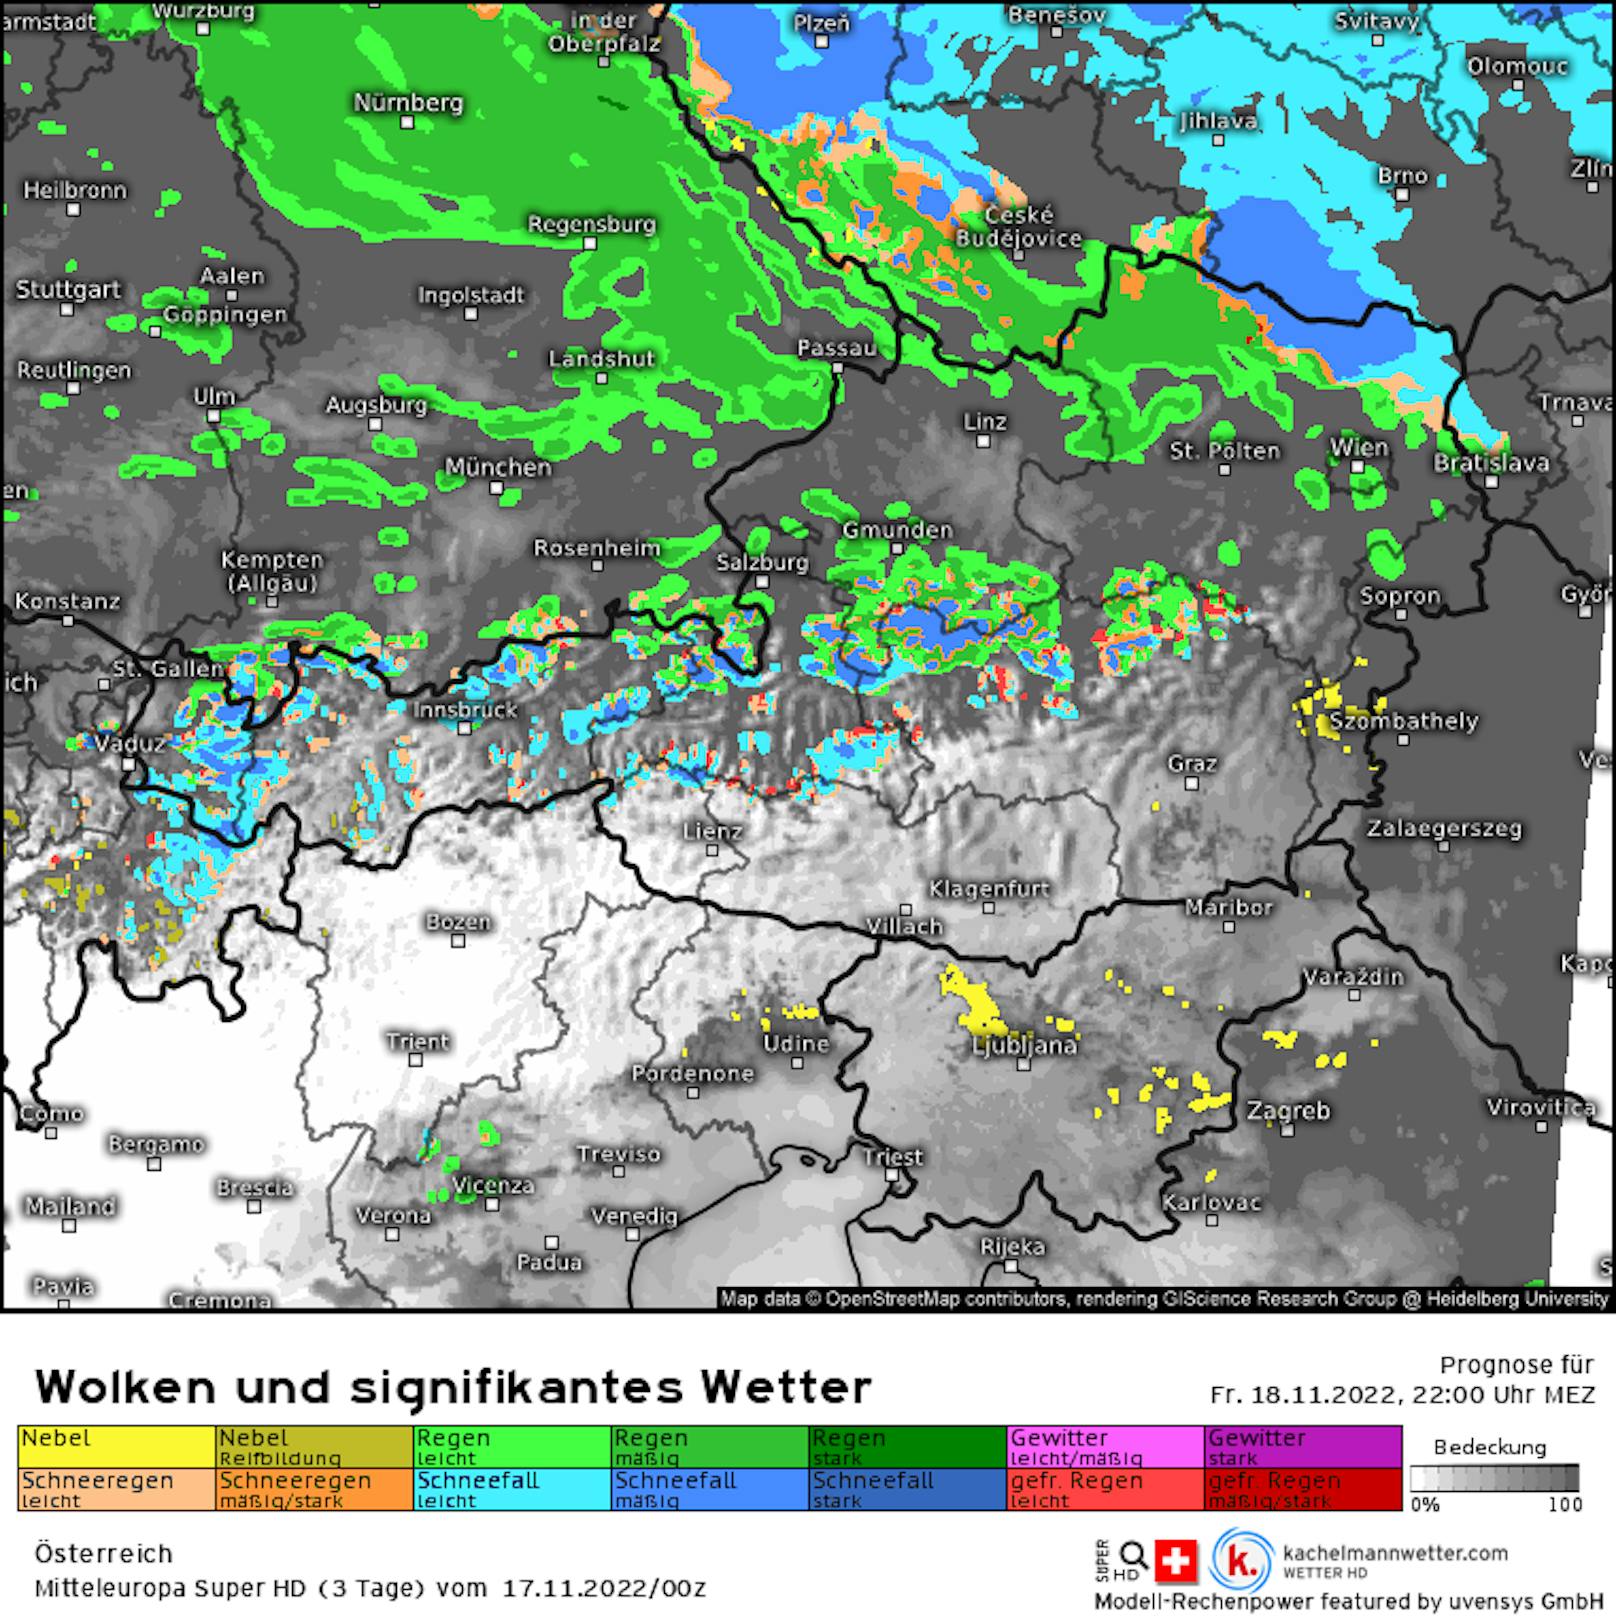 Freitag in der Nacht beginnt es: die <a data-li-document-ref="100238995" href="https://www.heute.at/g/kaelte-keule-bringt-schnee-jetzt-sogar-bis-nach-wien-100238995">Kälte-Keule bringt Schneefall</a> (blau) ins nördliche Weinviertel. Dieser zieht dann weiter bis nach Wien.